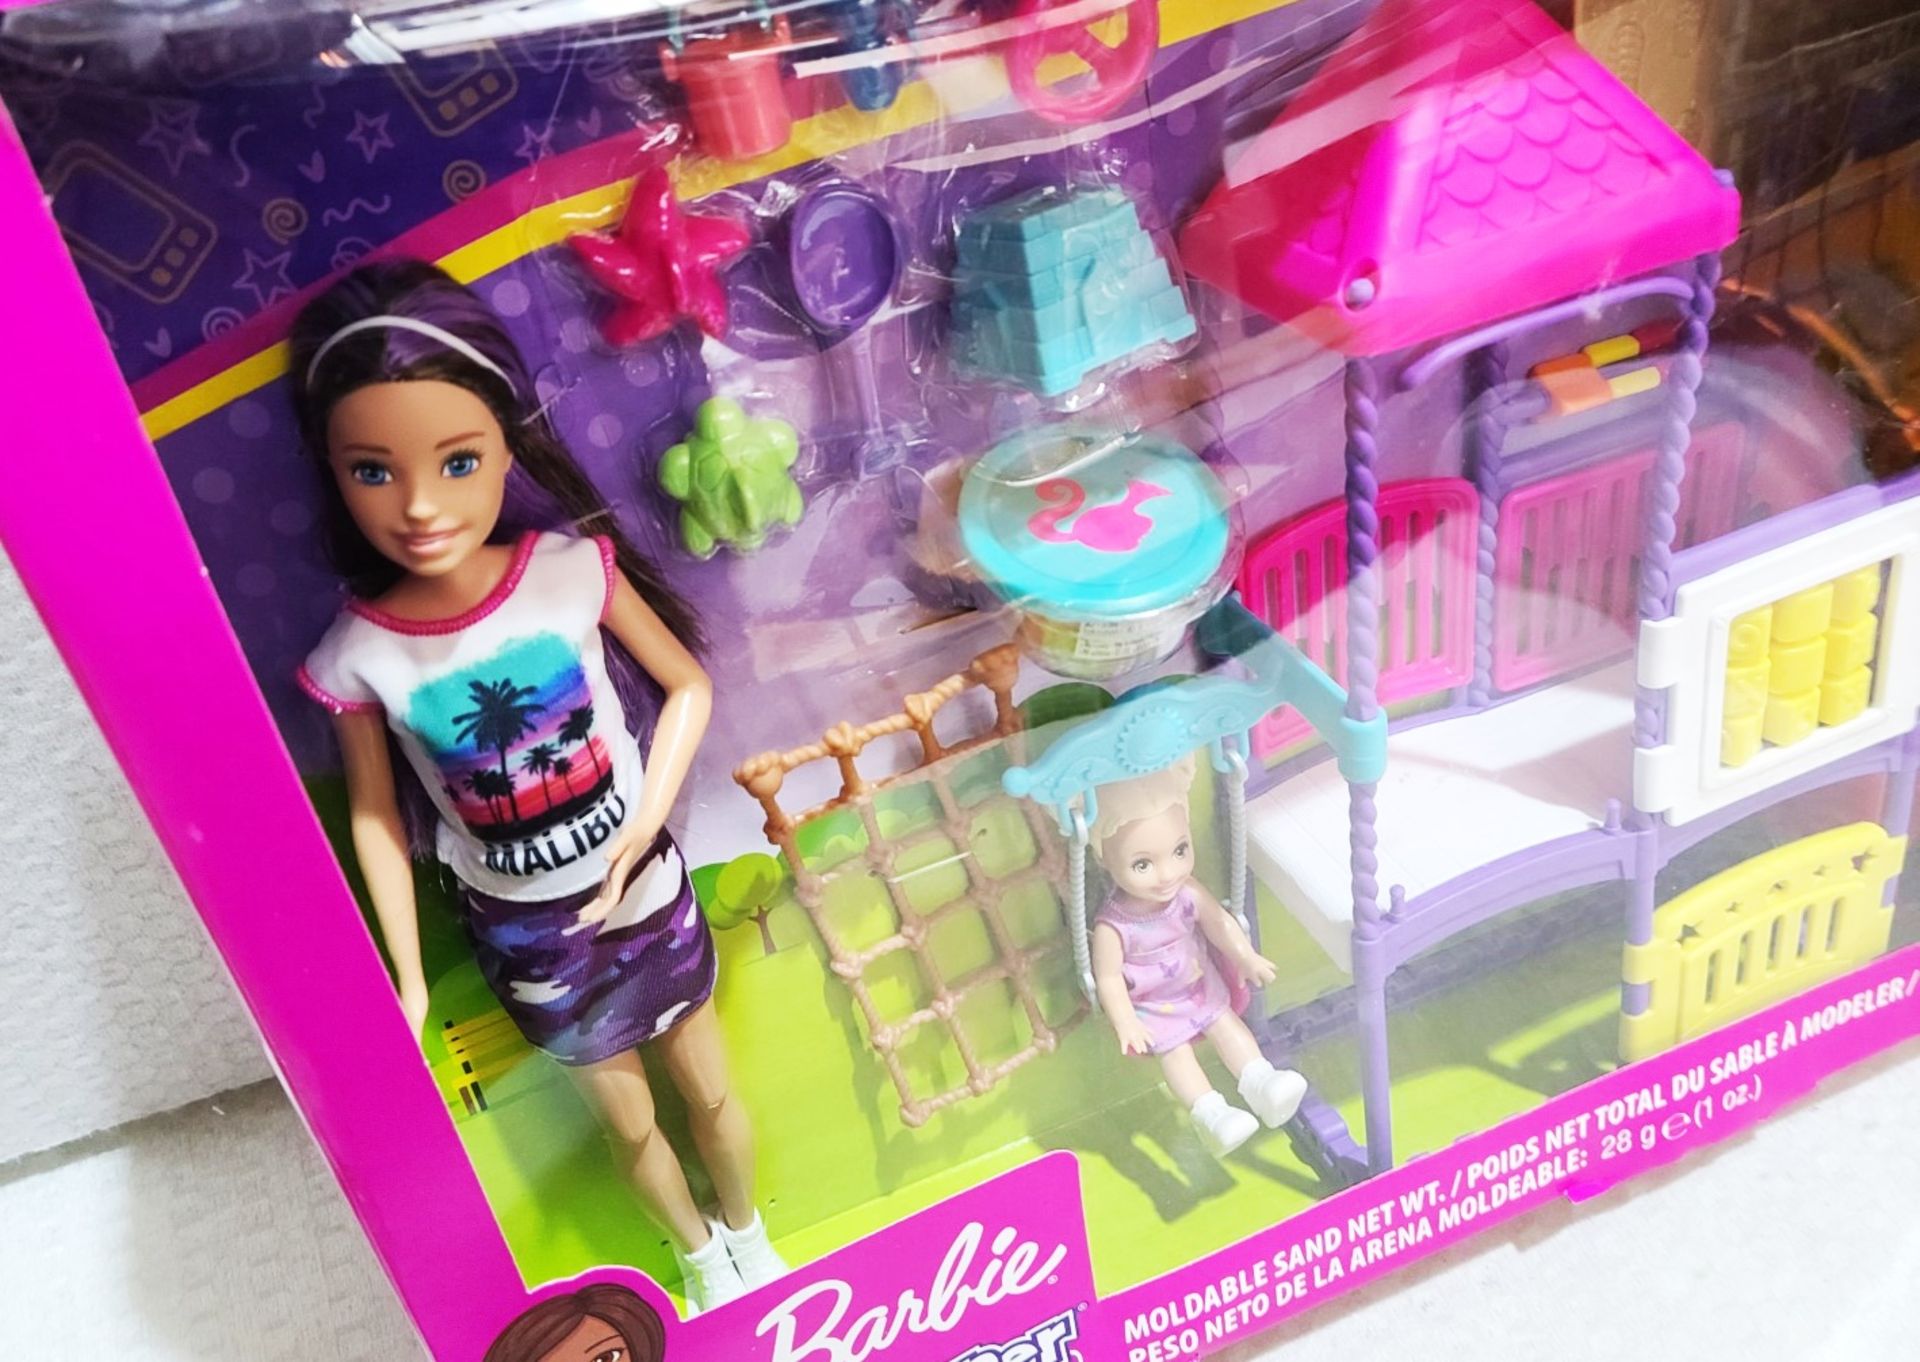 1 x MATTEL Barbie Skipper Babysitters Climb 'N' Explore Play Set